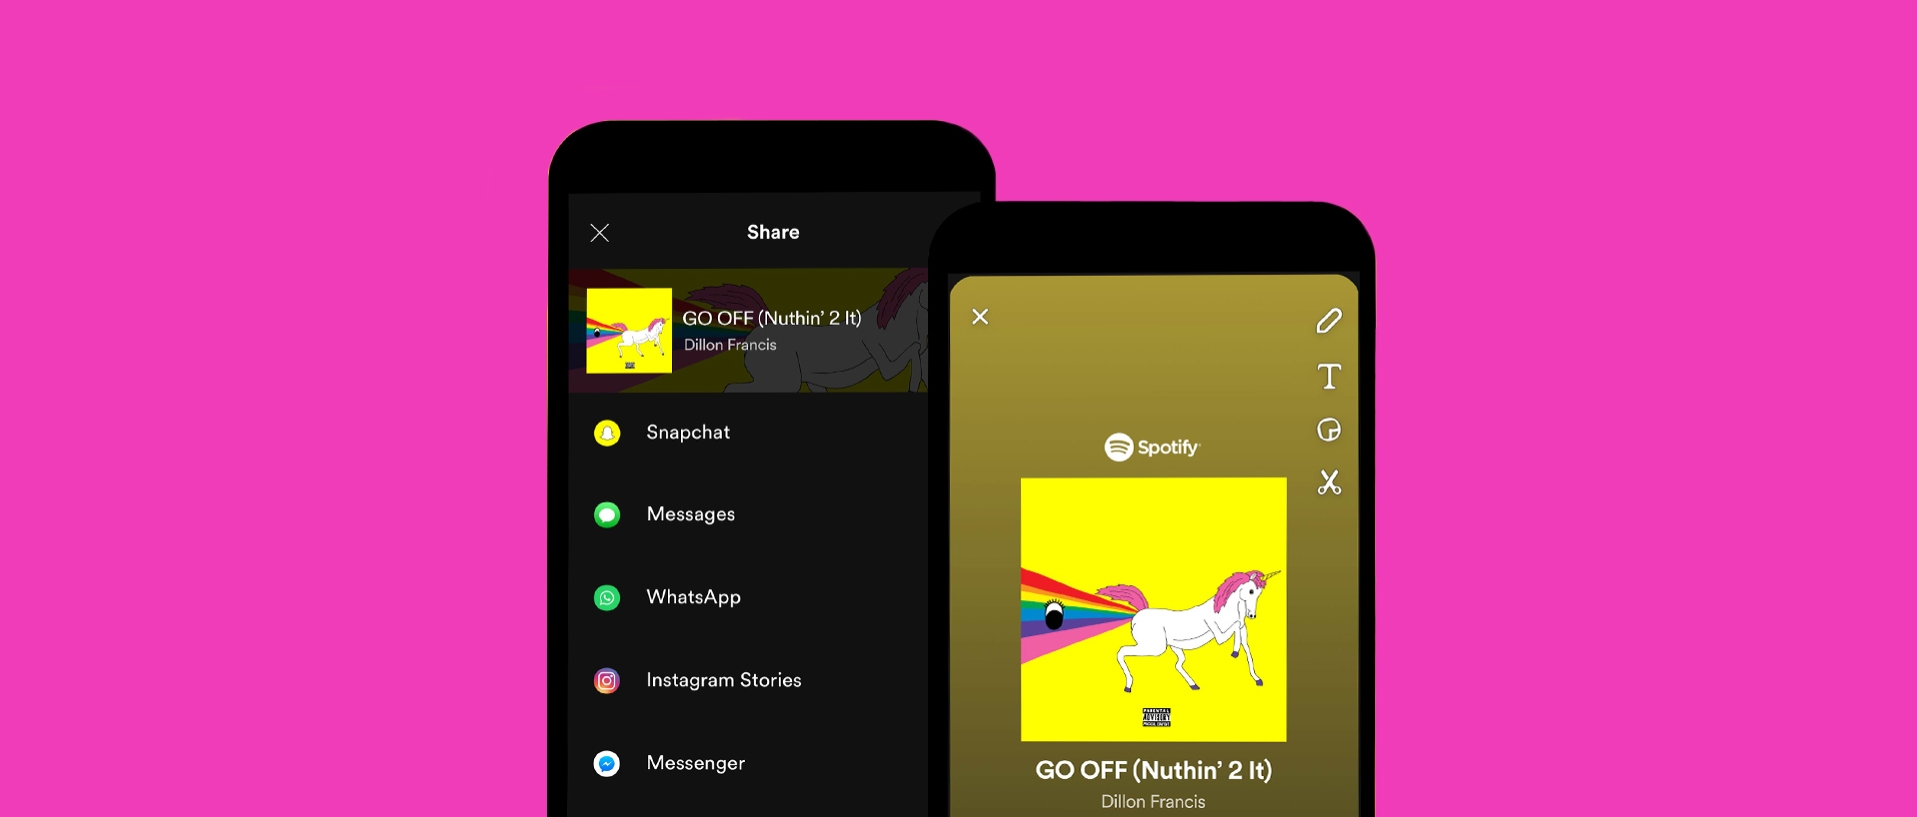 Spotify dostává podporu pro Snapchat